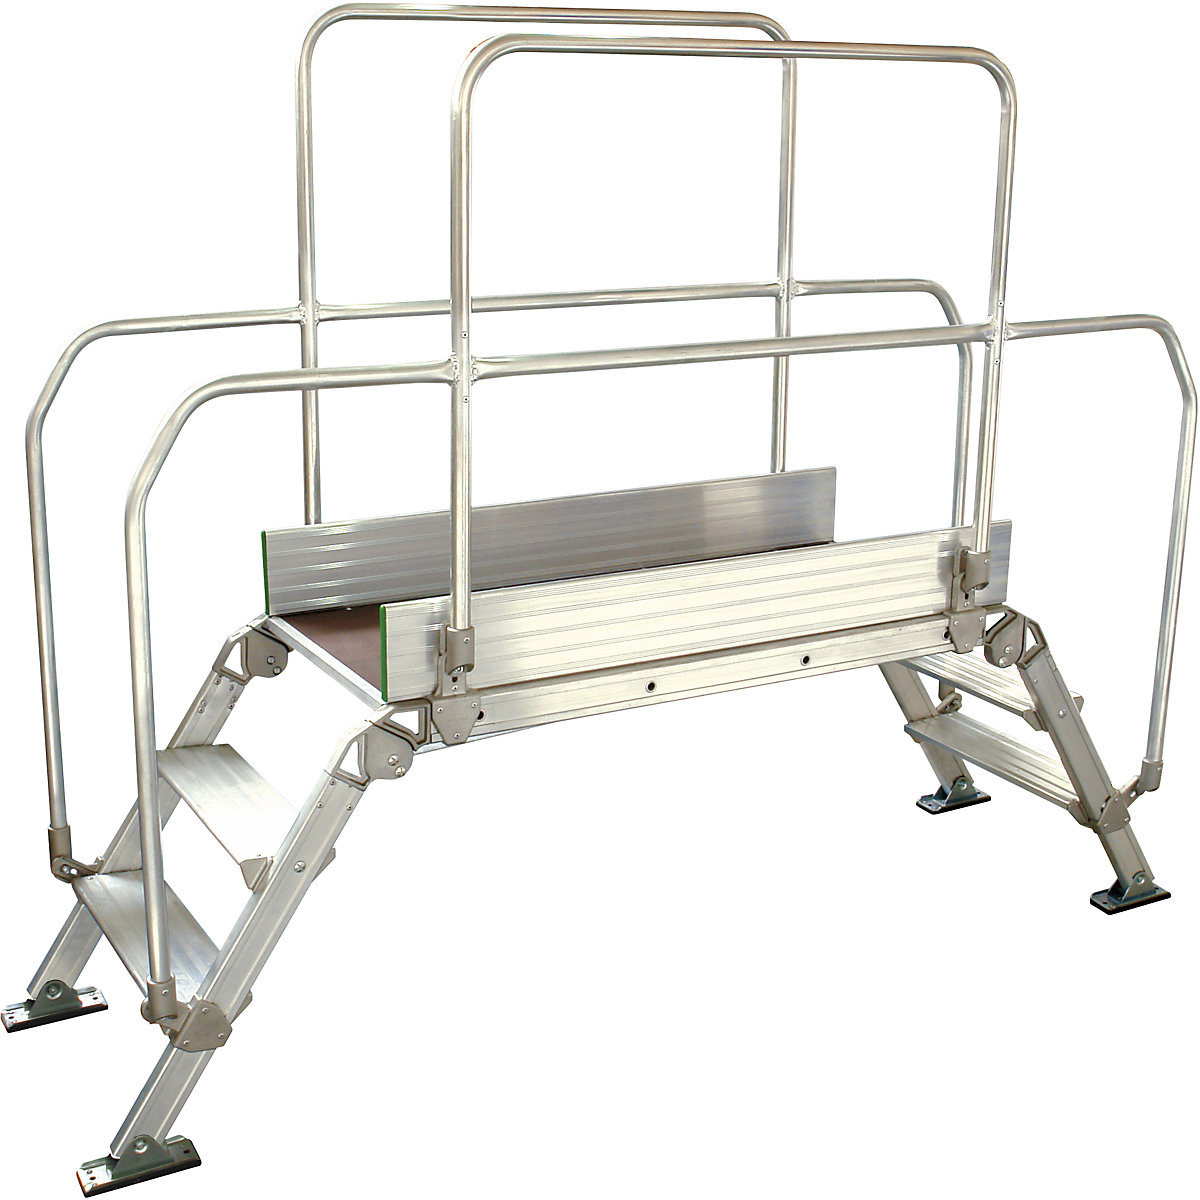 Aluminium ladderbrug, totale belasting 200 kg, 3 treden, platform 1200 x 530 mm-8